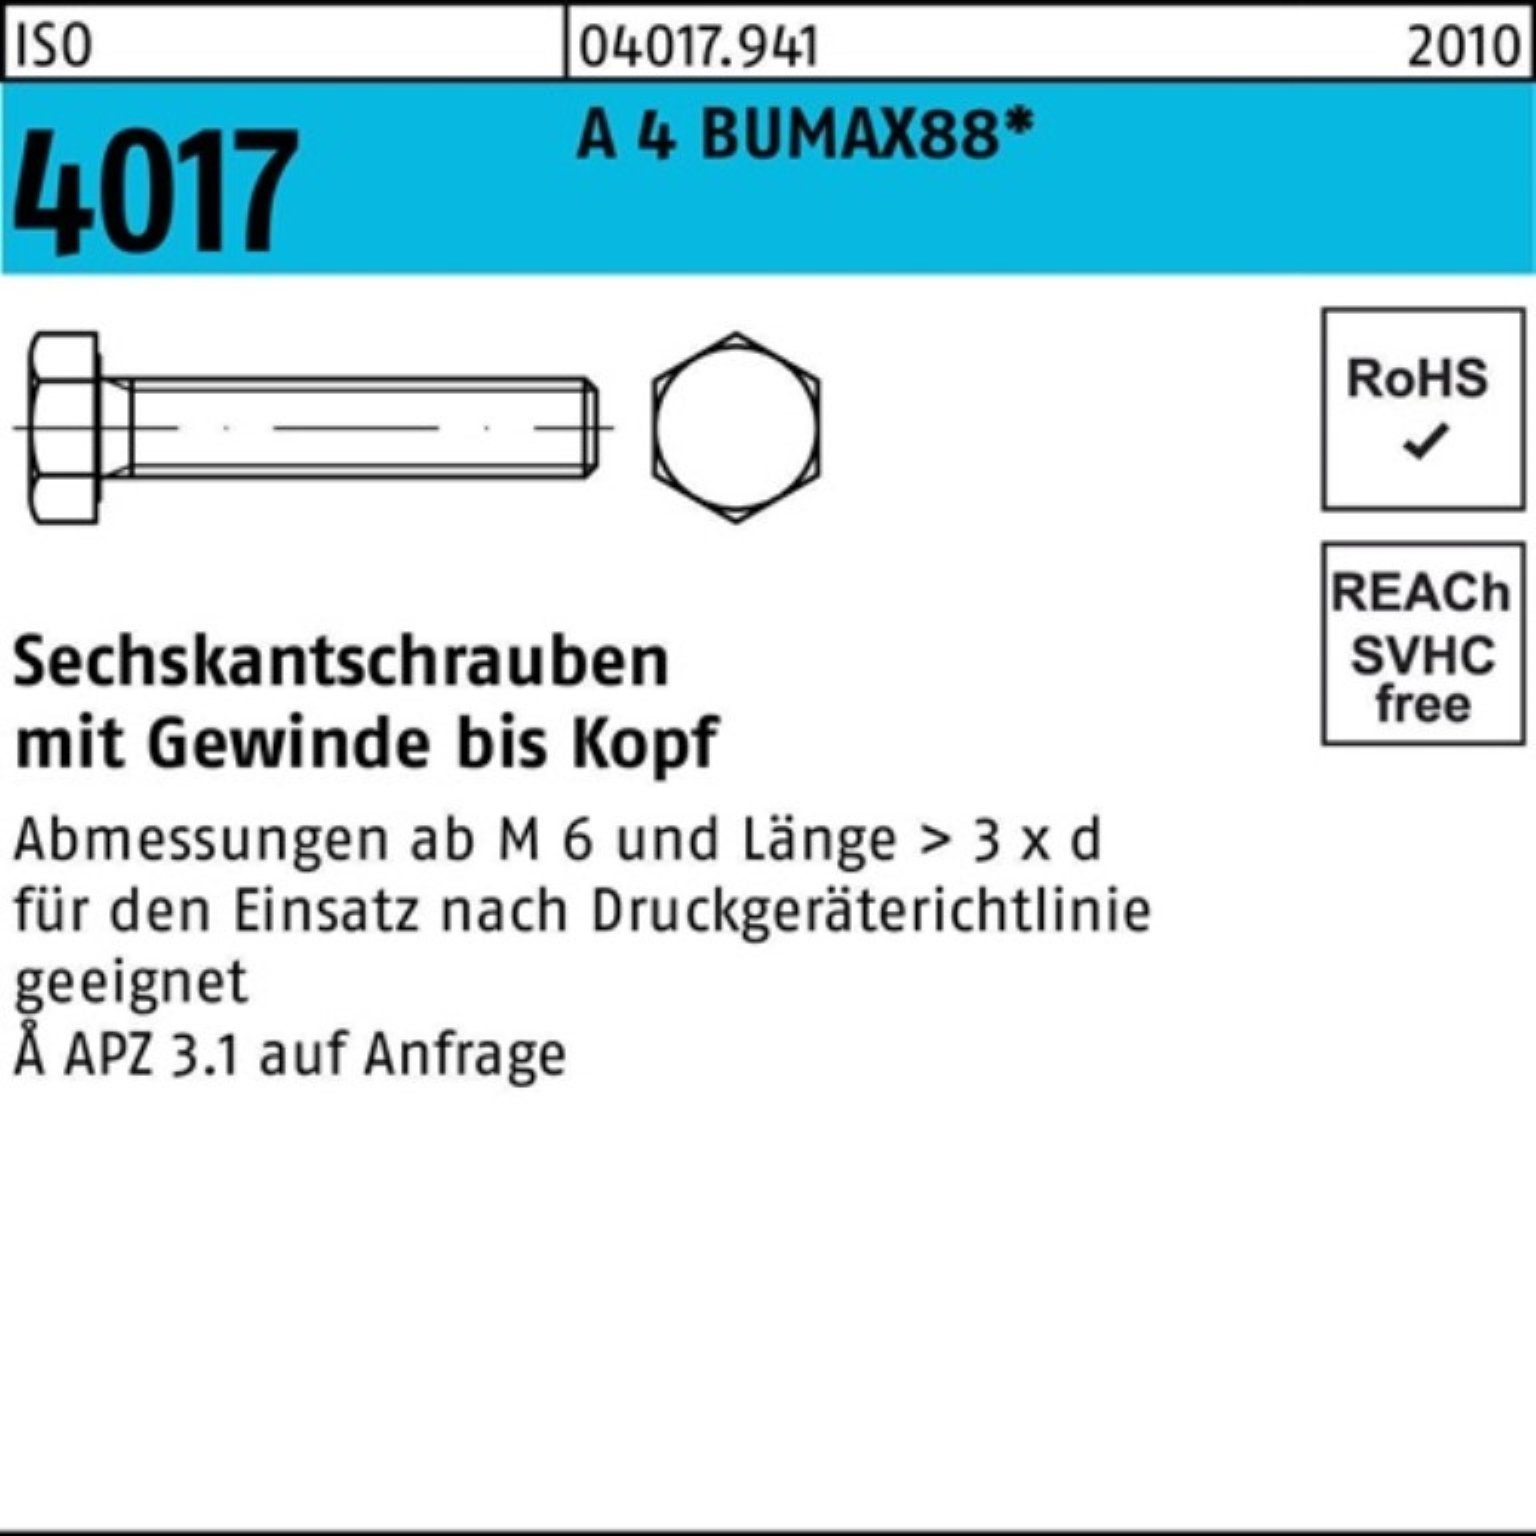 Stück Sechskantschraube BUMAX88 4 25 Sechskantschraube M12x ISO Bufab A VG Pack 40 4017 100er